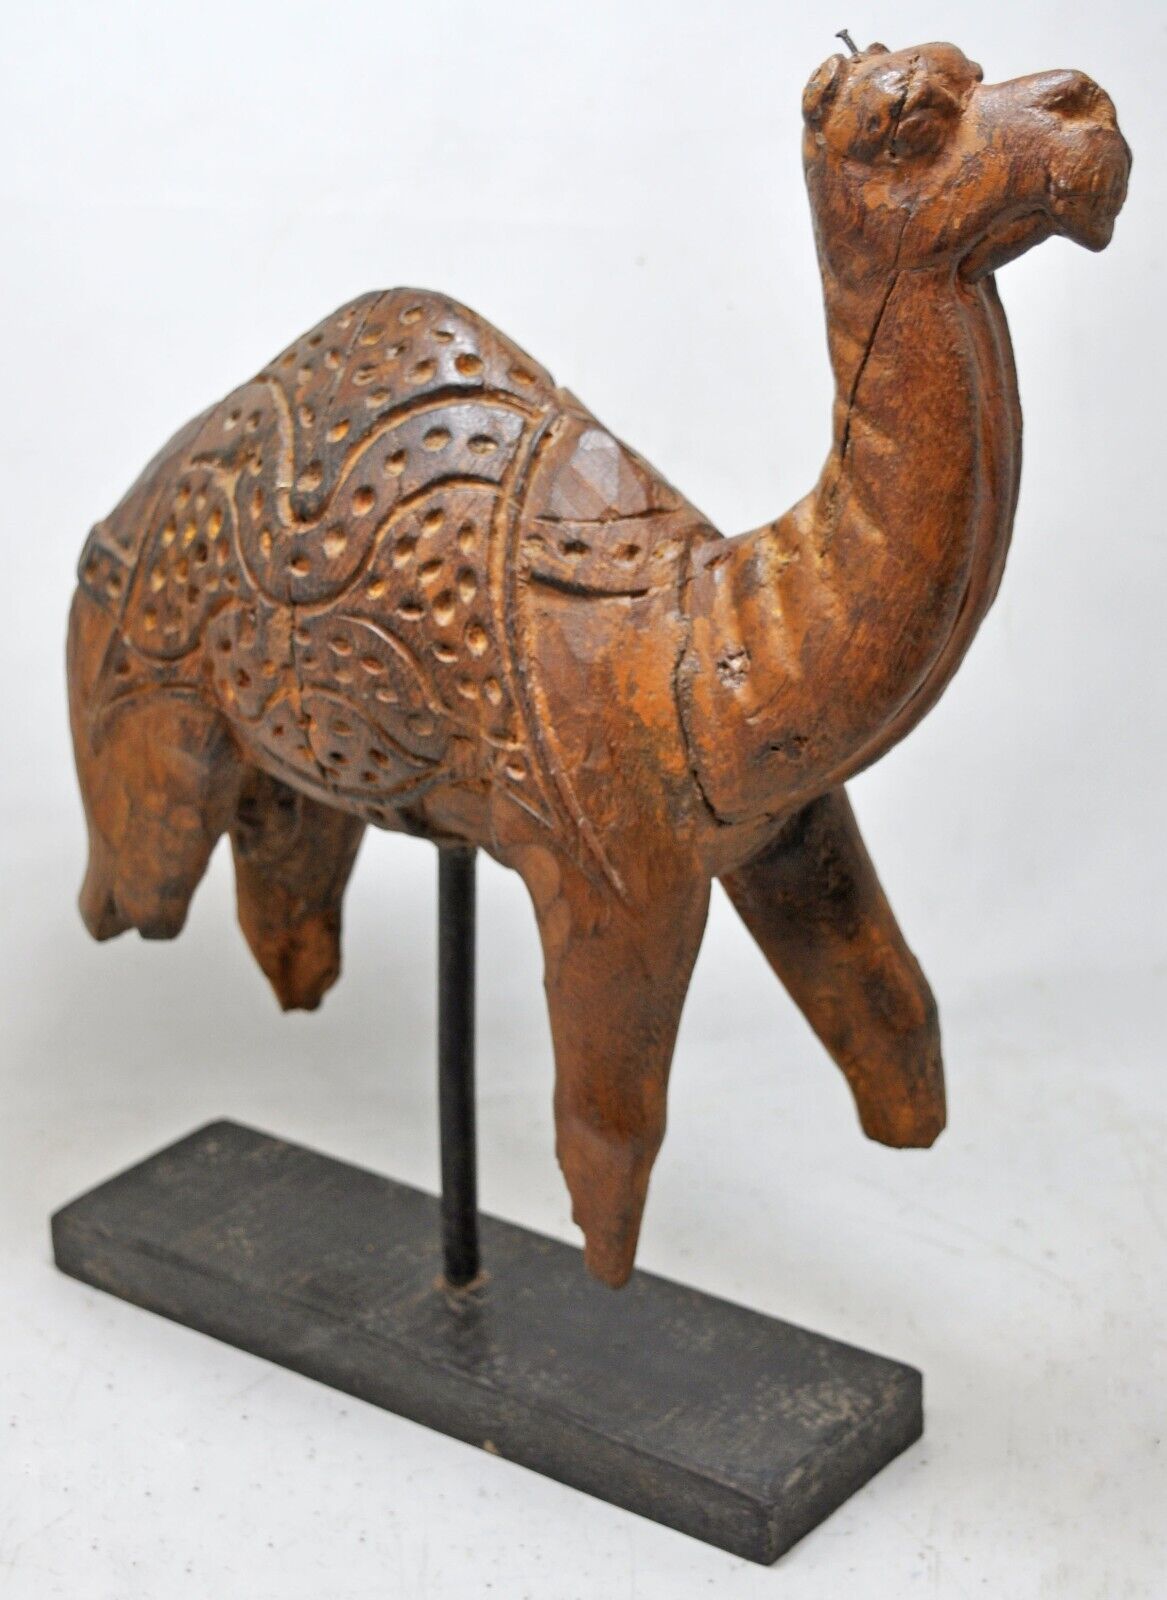 Antique Wooden Camel Figurine Statue Original Old Hand Carved